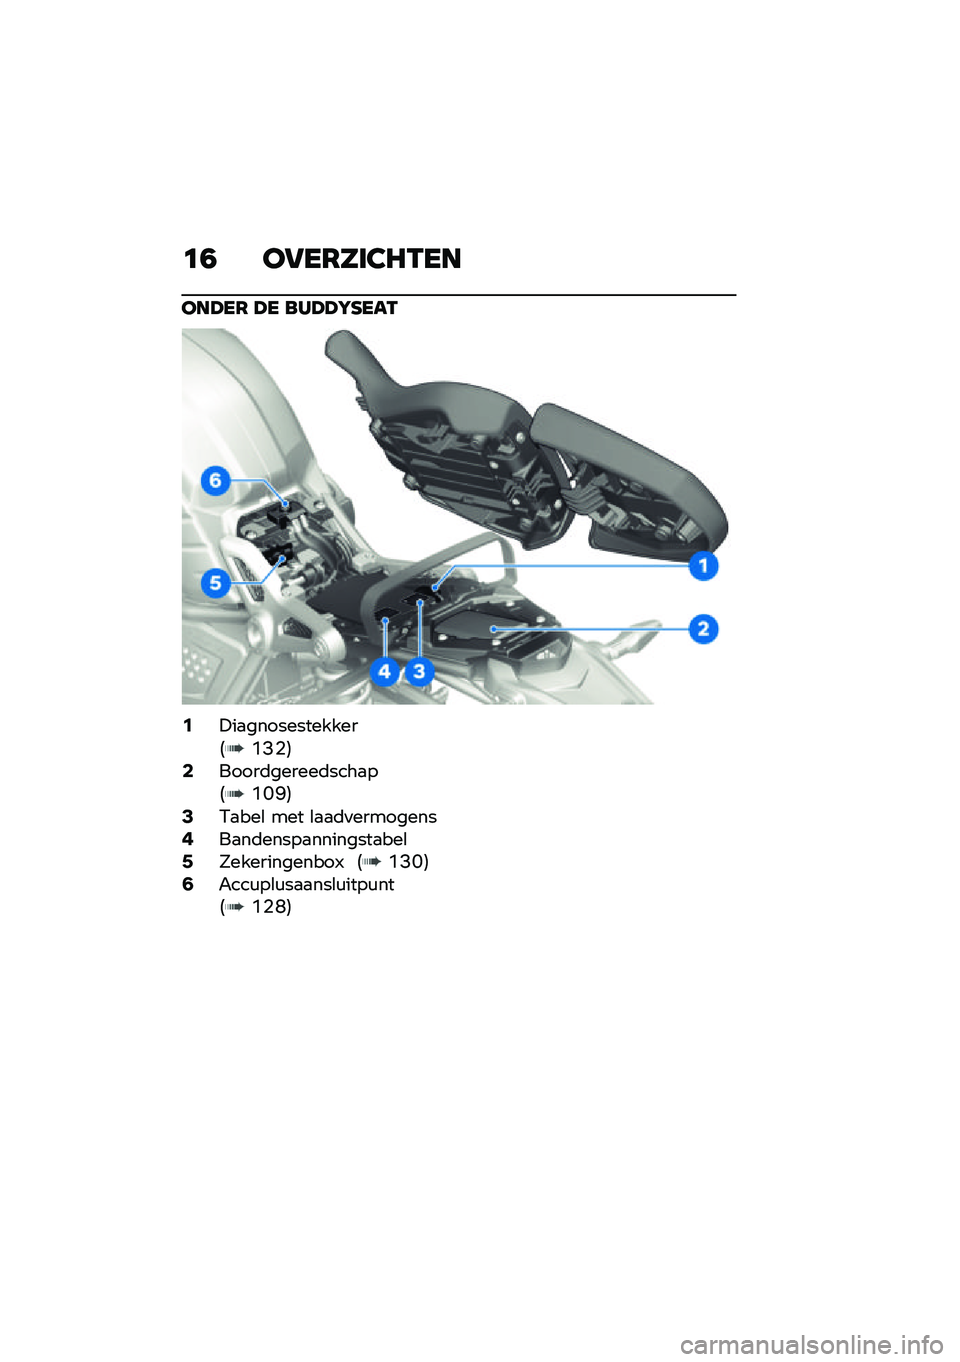 BMW MOTORRAD R NINE T 2021  Handleiding (in Dutch) �	�1 ��6��7���3�8�-��
���A��7 �A� ���A�A�L�G���-
�0�!��
�������������4�B�=�%�5�2�����	������	����
��4�B�@�F�5�4�.�
���\b ��� �\b�
�
�	�
���������6�